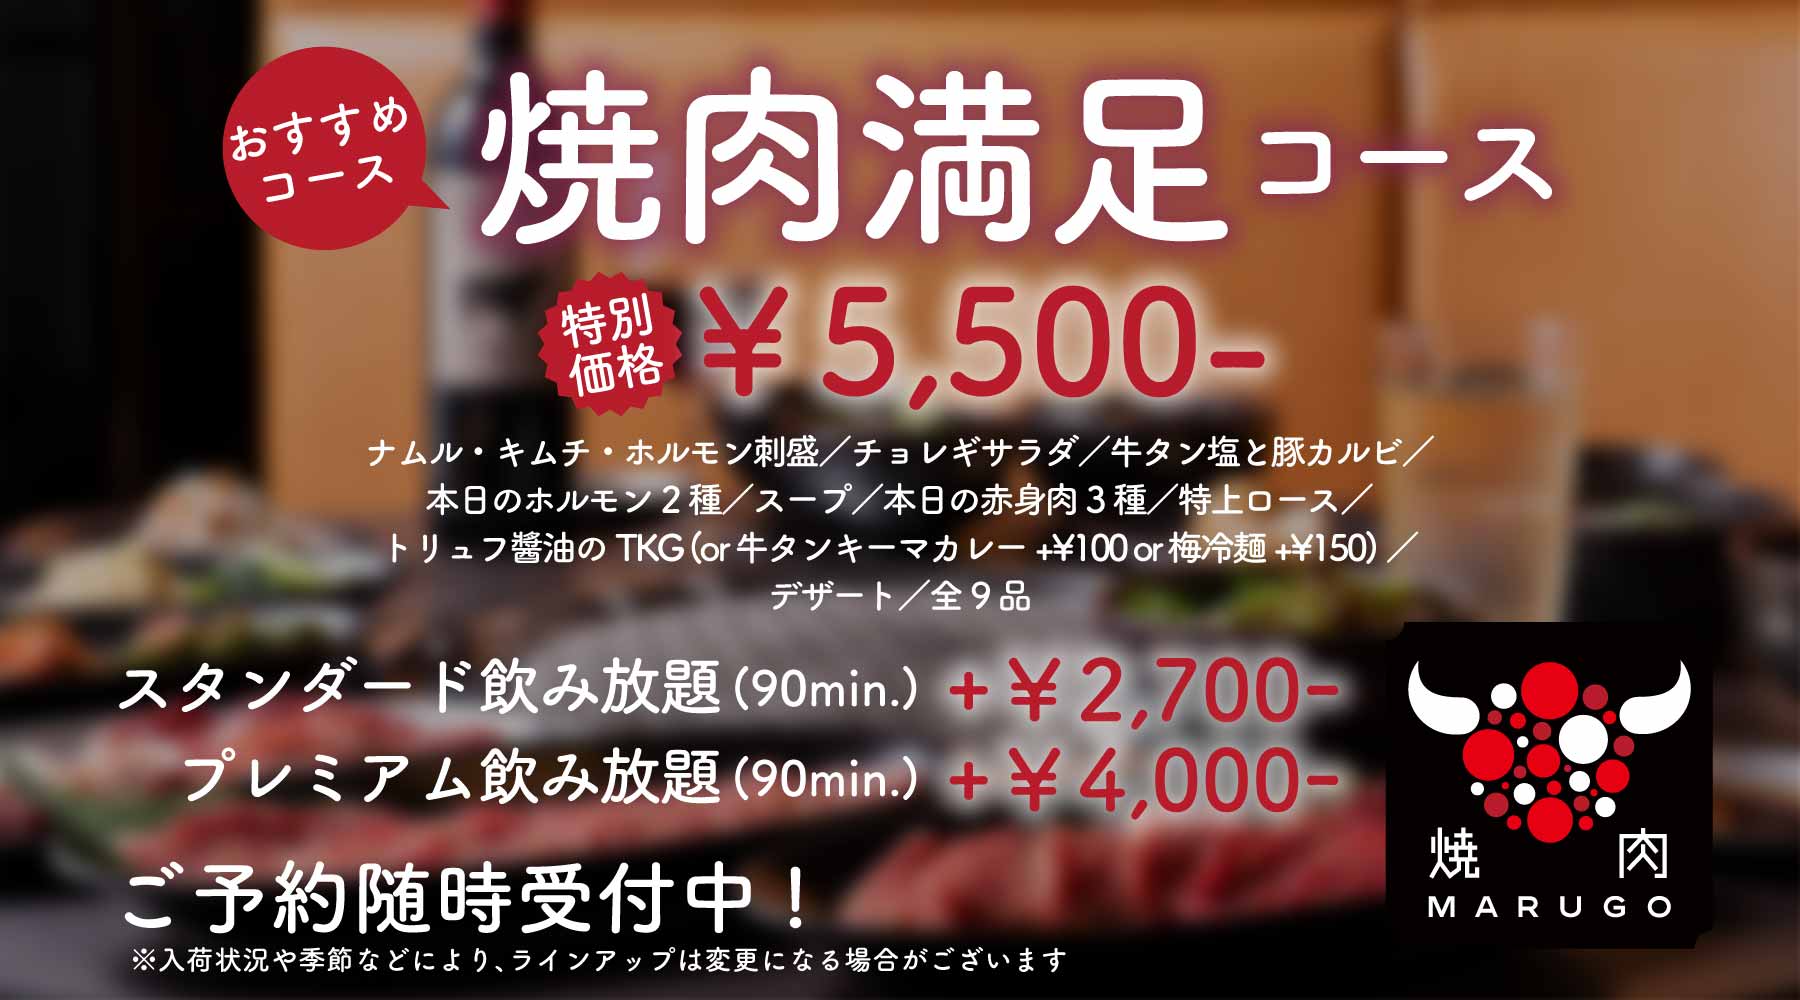 「焼肉満足コース」¥5,500-